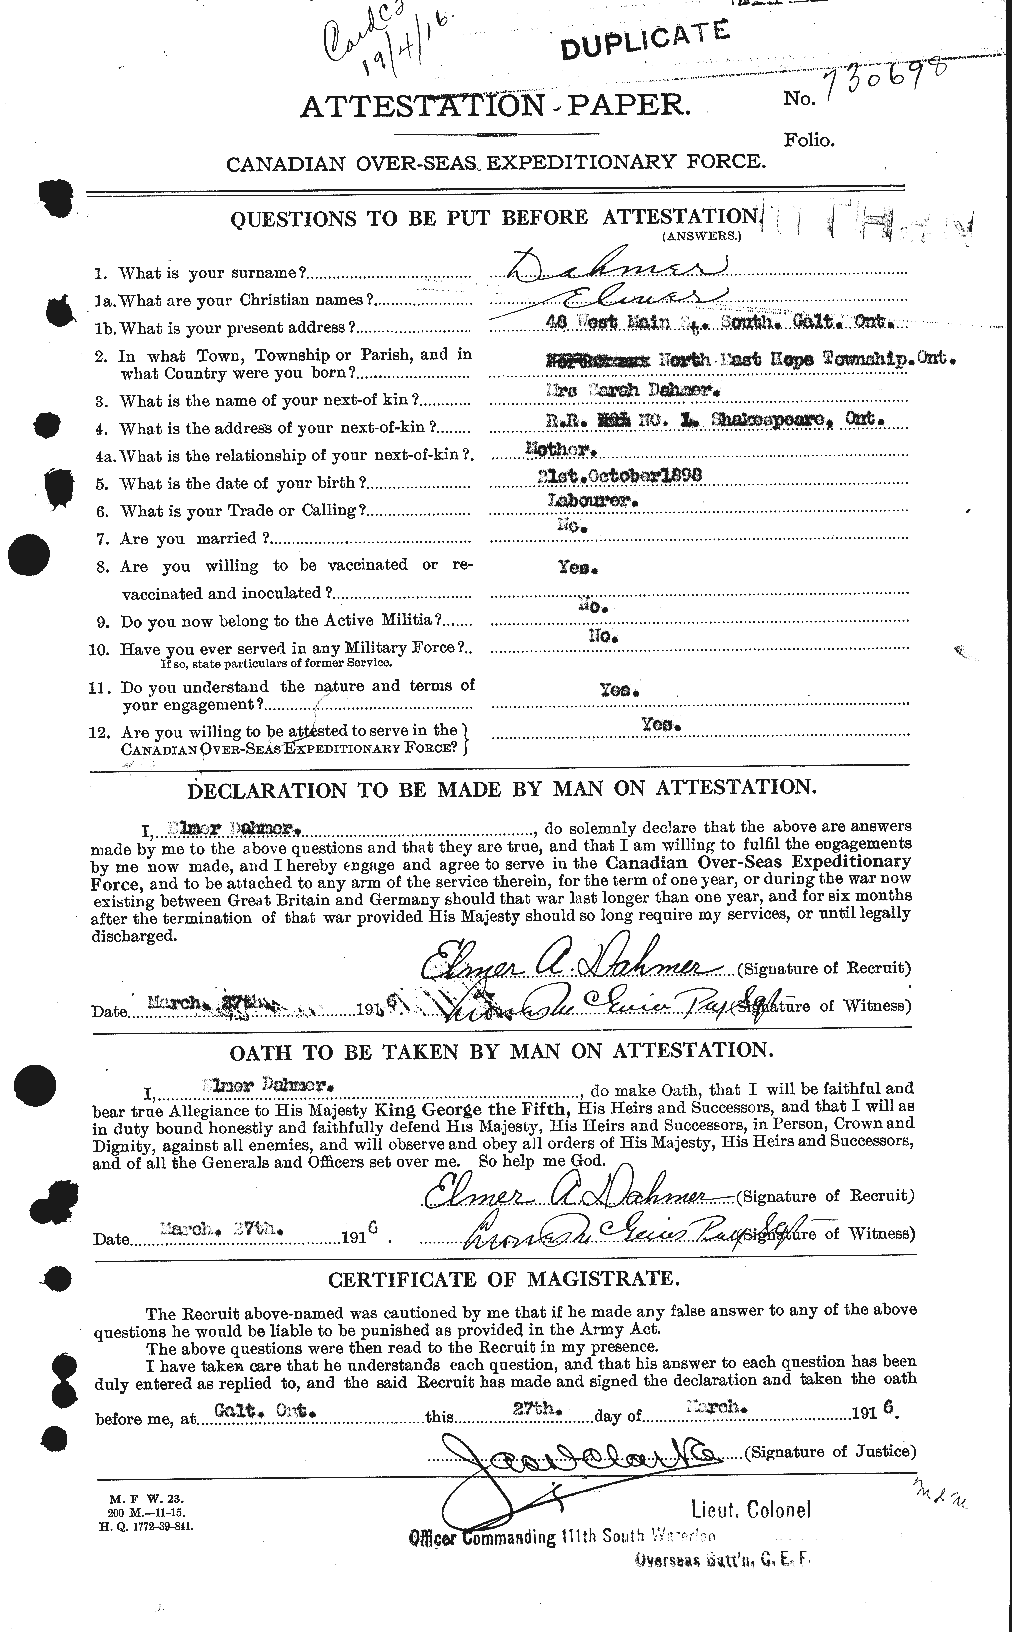 Dossiers du Personnel de la Première Guerre mondiale - CEC 280821a